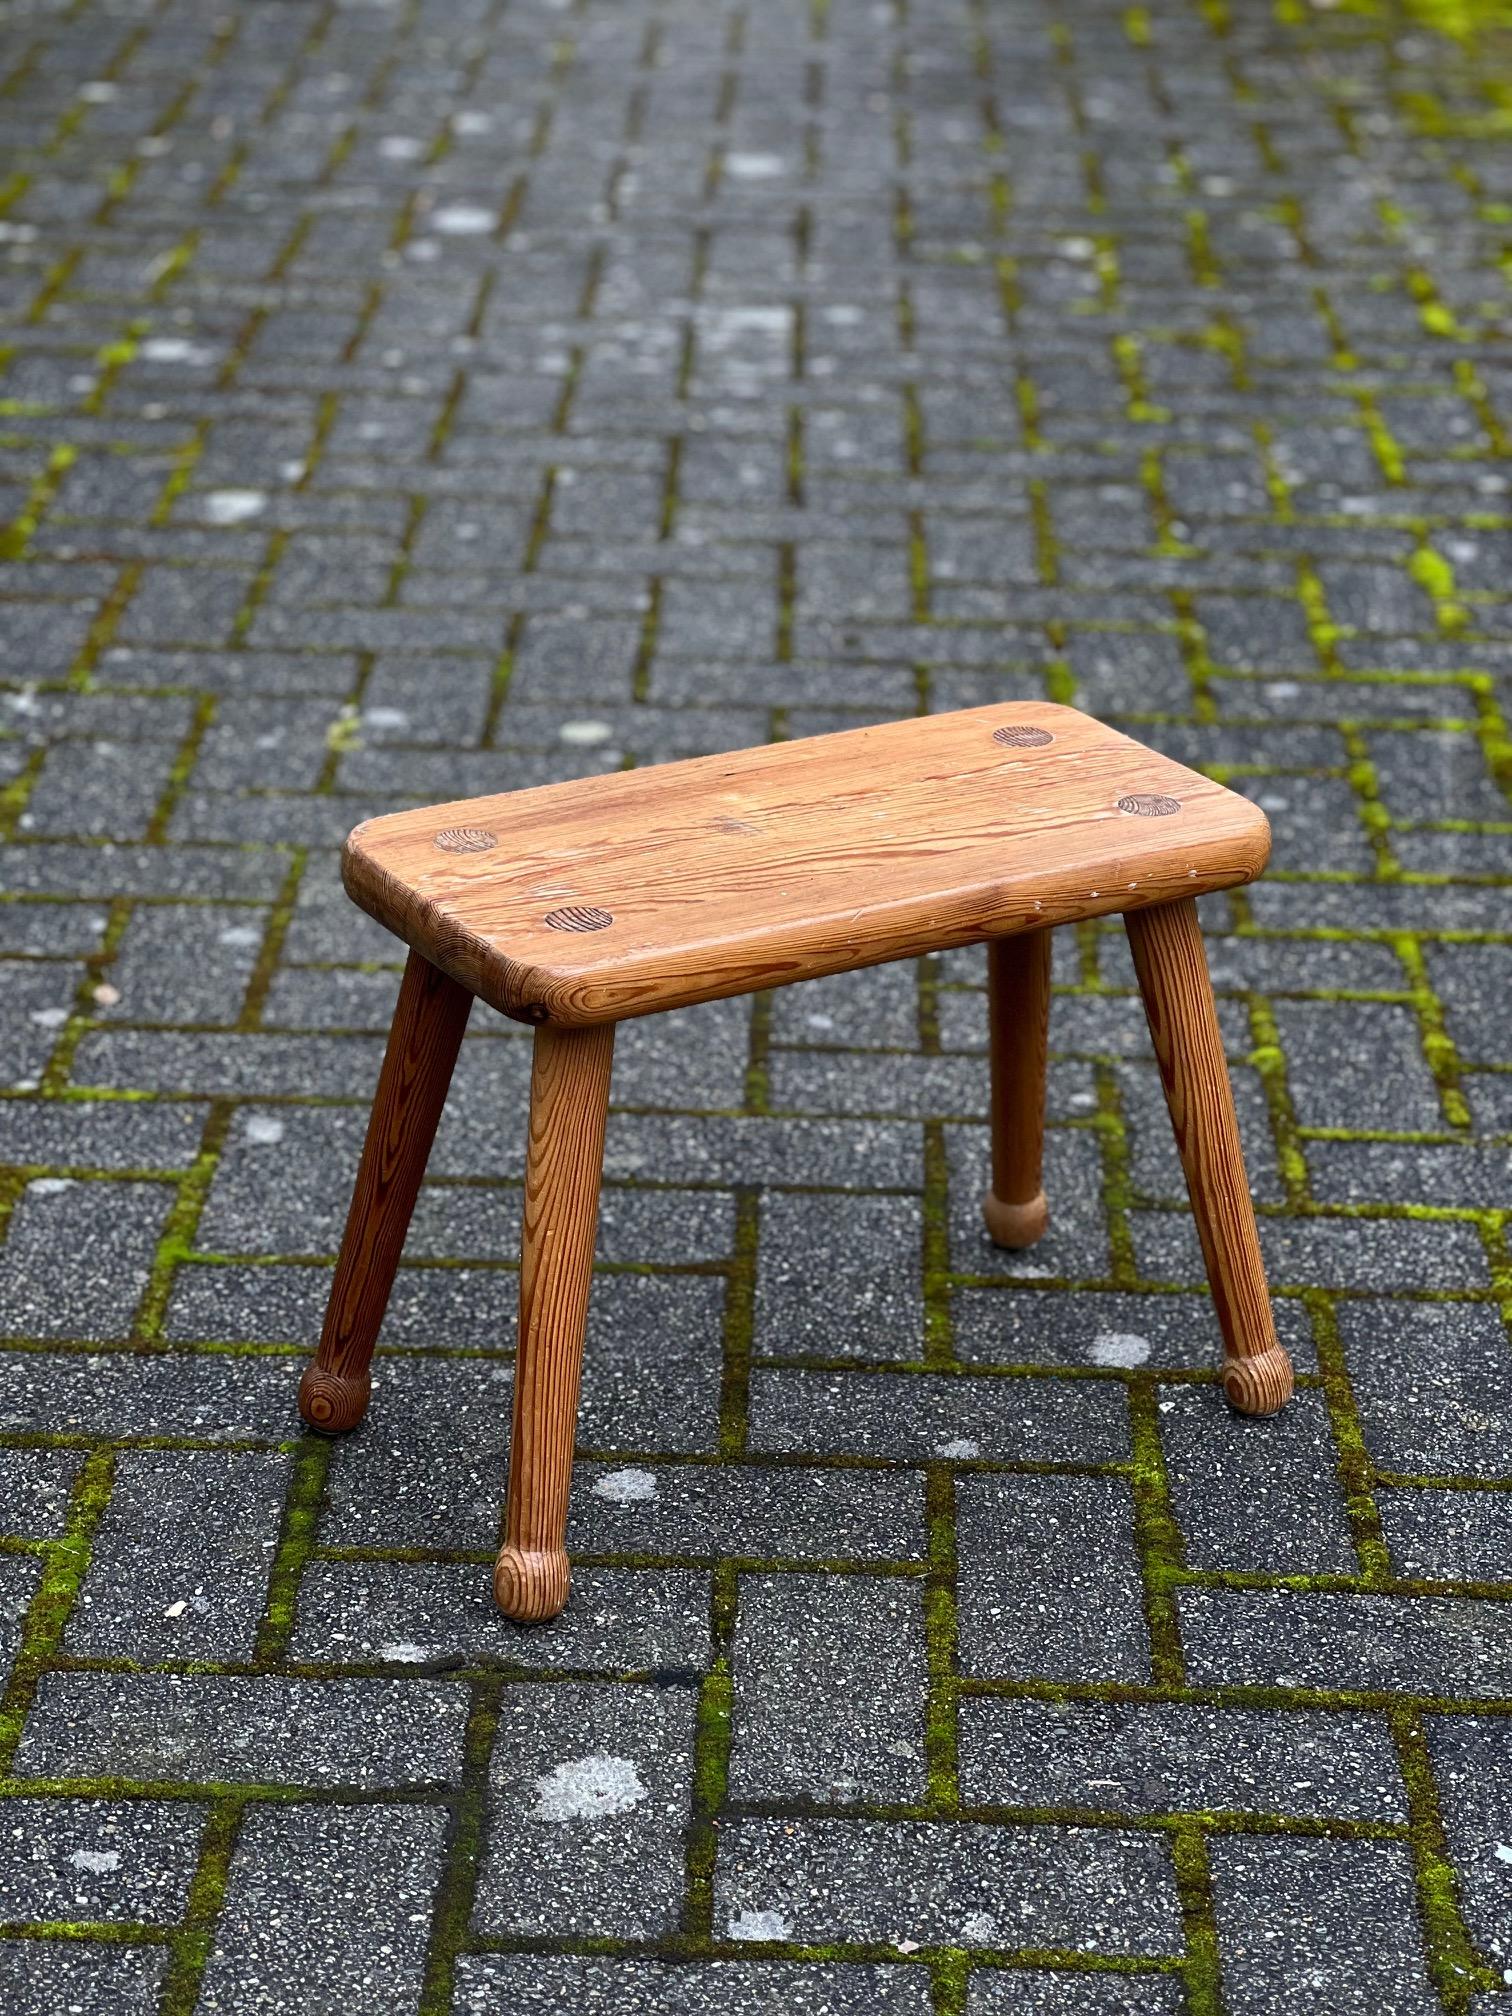 Dies ist eine elegante rechteckige Kiefer. Produziert in Schweden in den 1950er Jahren. Es ist eine schöne Form, die Maserung zeigt eine hohe Qualität des Holzes. Die Beine können abgeschraubt werden.  Schöne Patina auf dem Overall. 



Carl